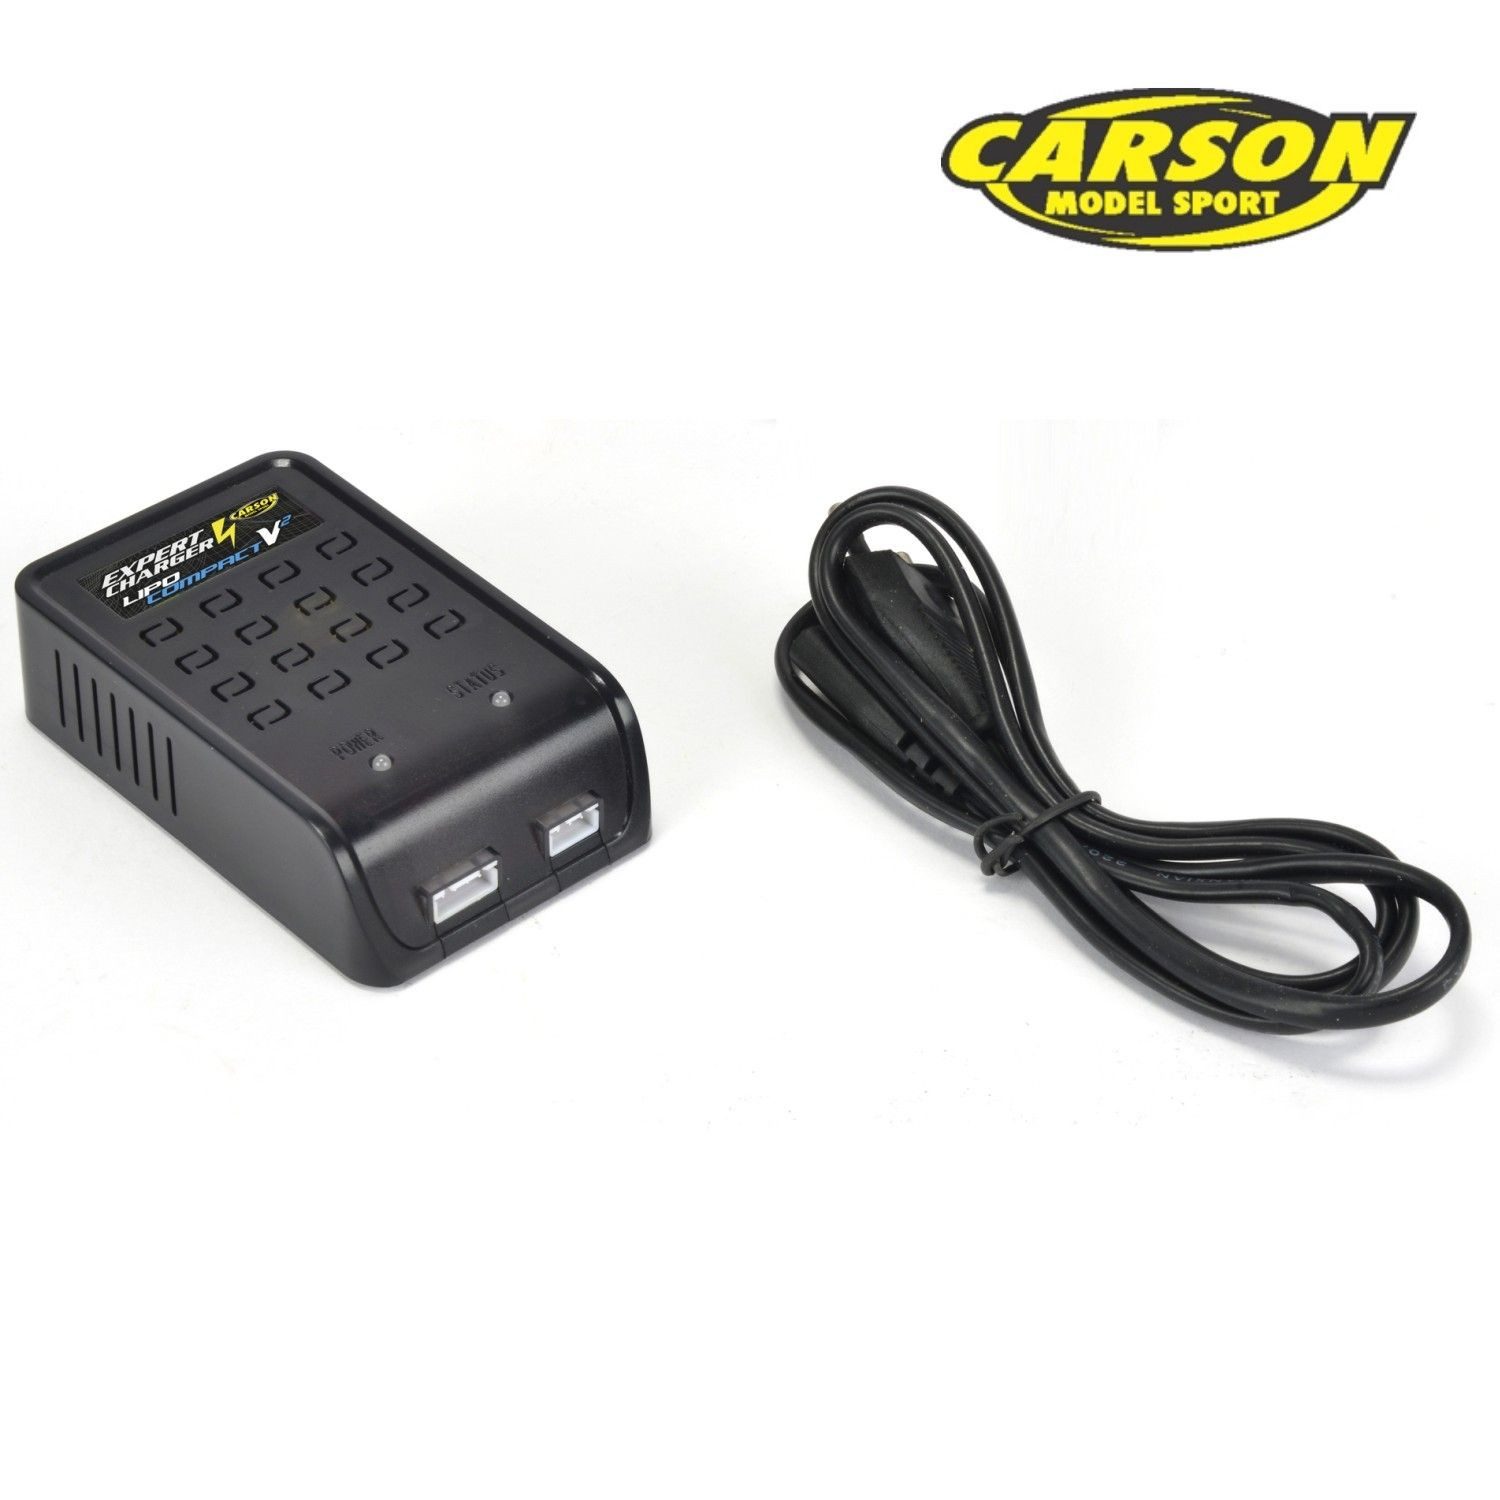 CARSON Carson Expert Charger Lipo Lader 2-S 7,4V - 11,1V Compact V2 RC-Ladegerät